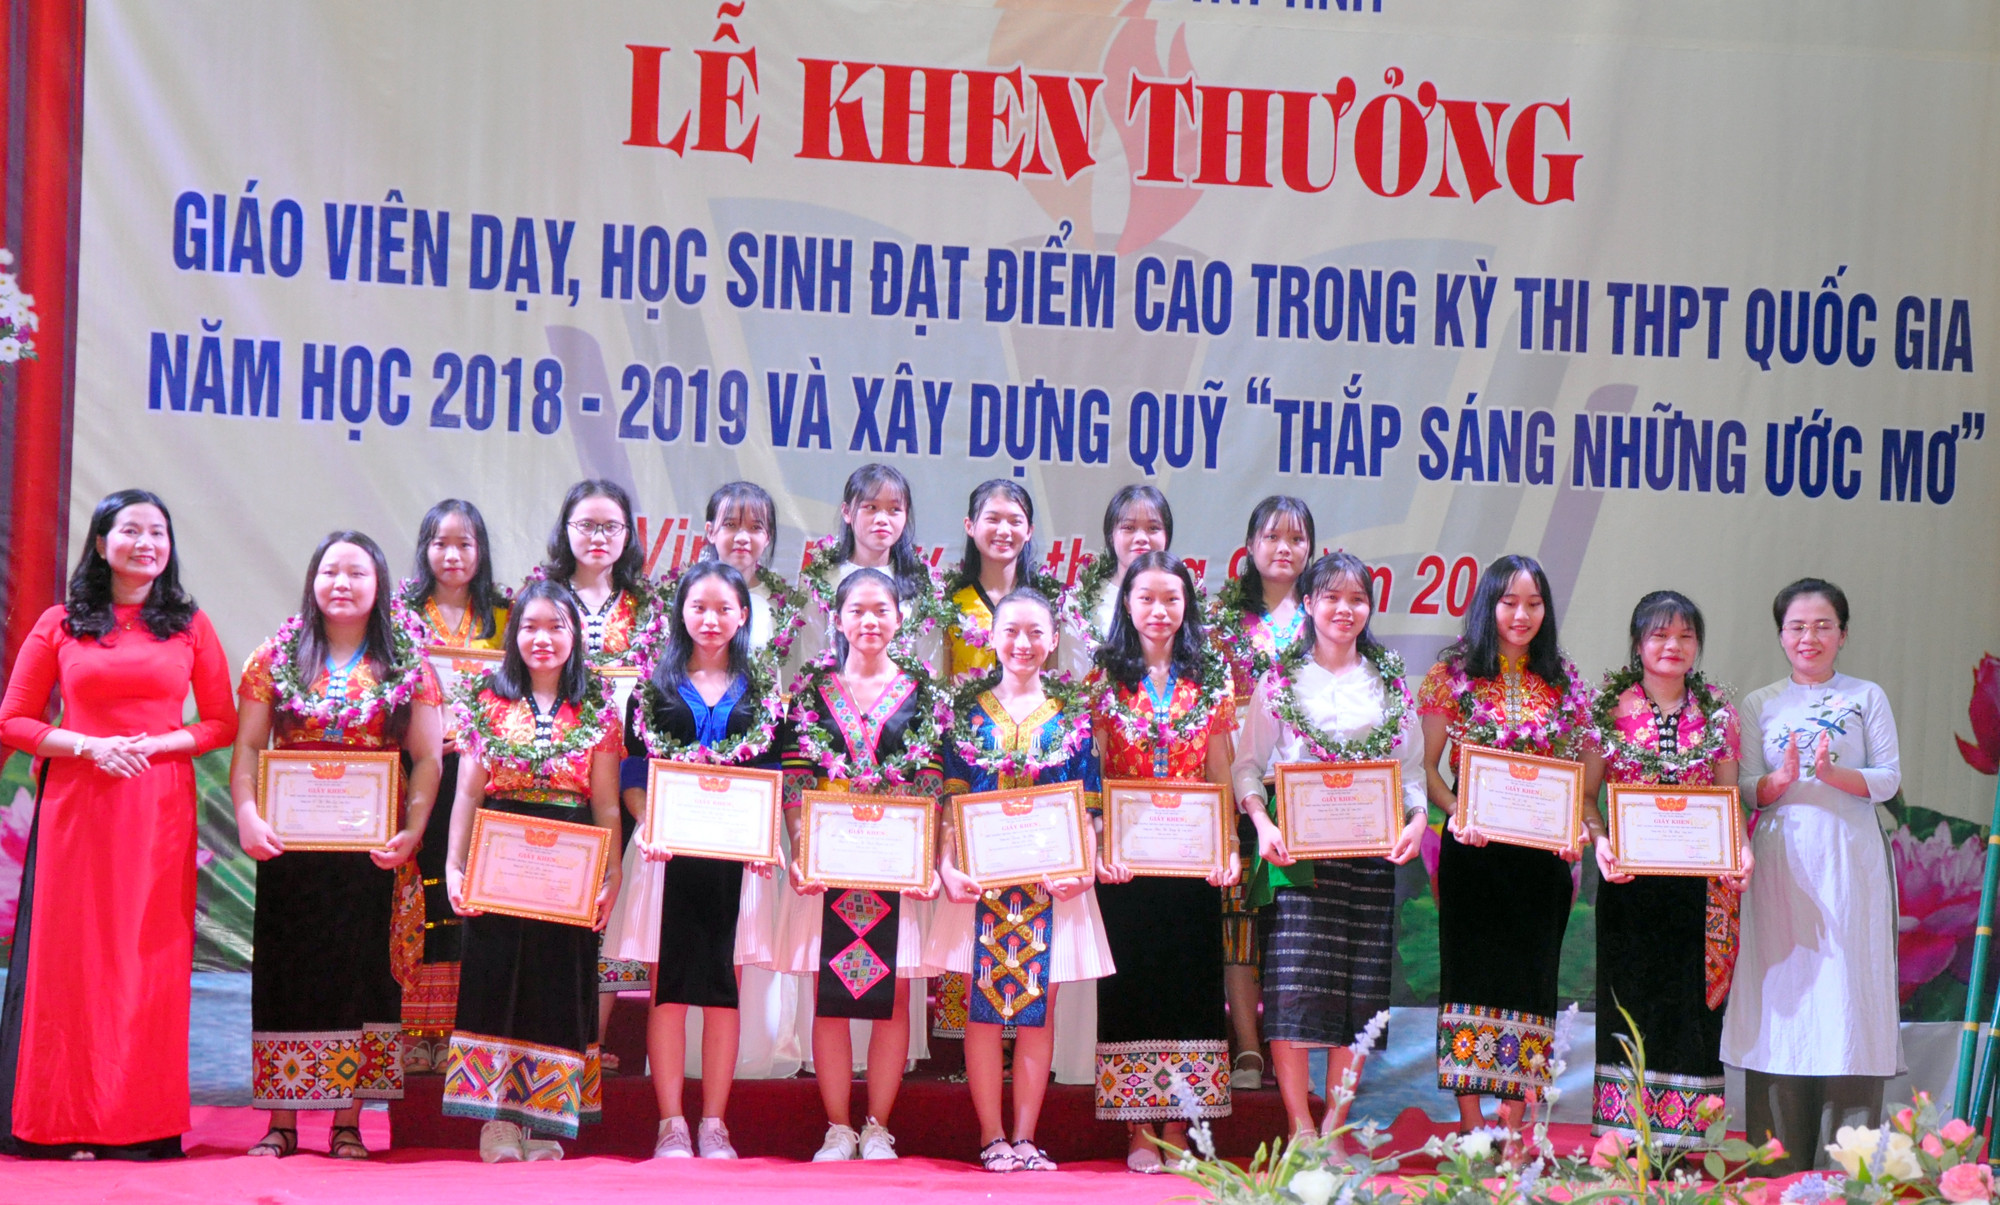 Võ Thị Minh Sinh - Ủy viên Ban Thường vụ Tỉnh ủy, Chủ tịch Ủy ban MTTQ Việt Nam tỉnh Nghệ An